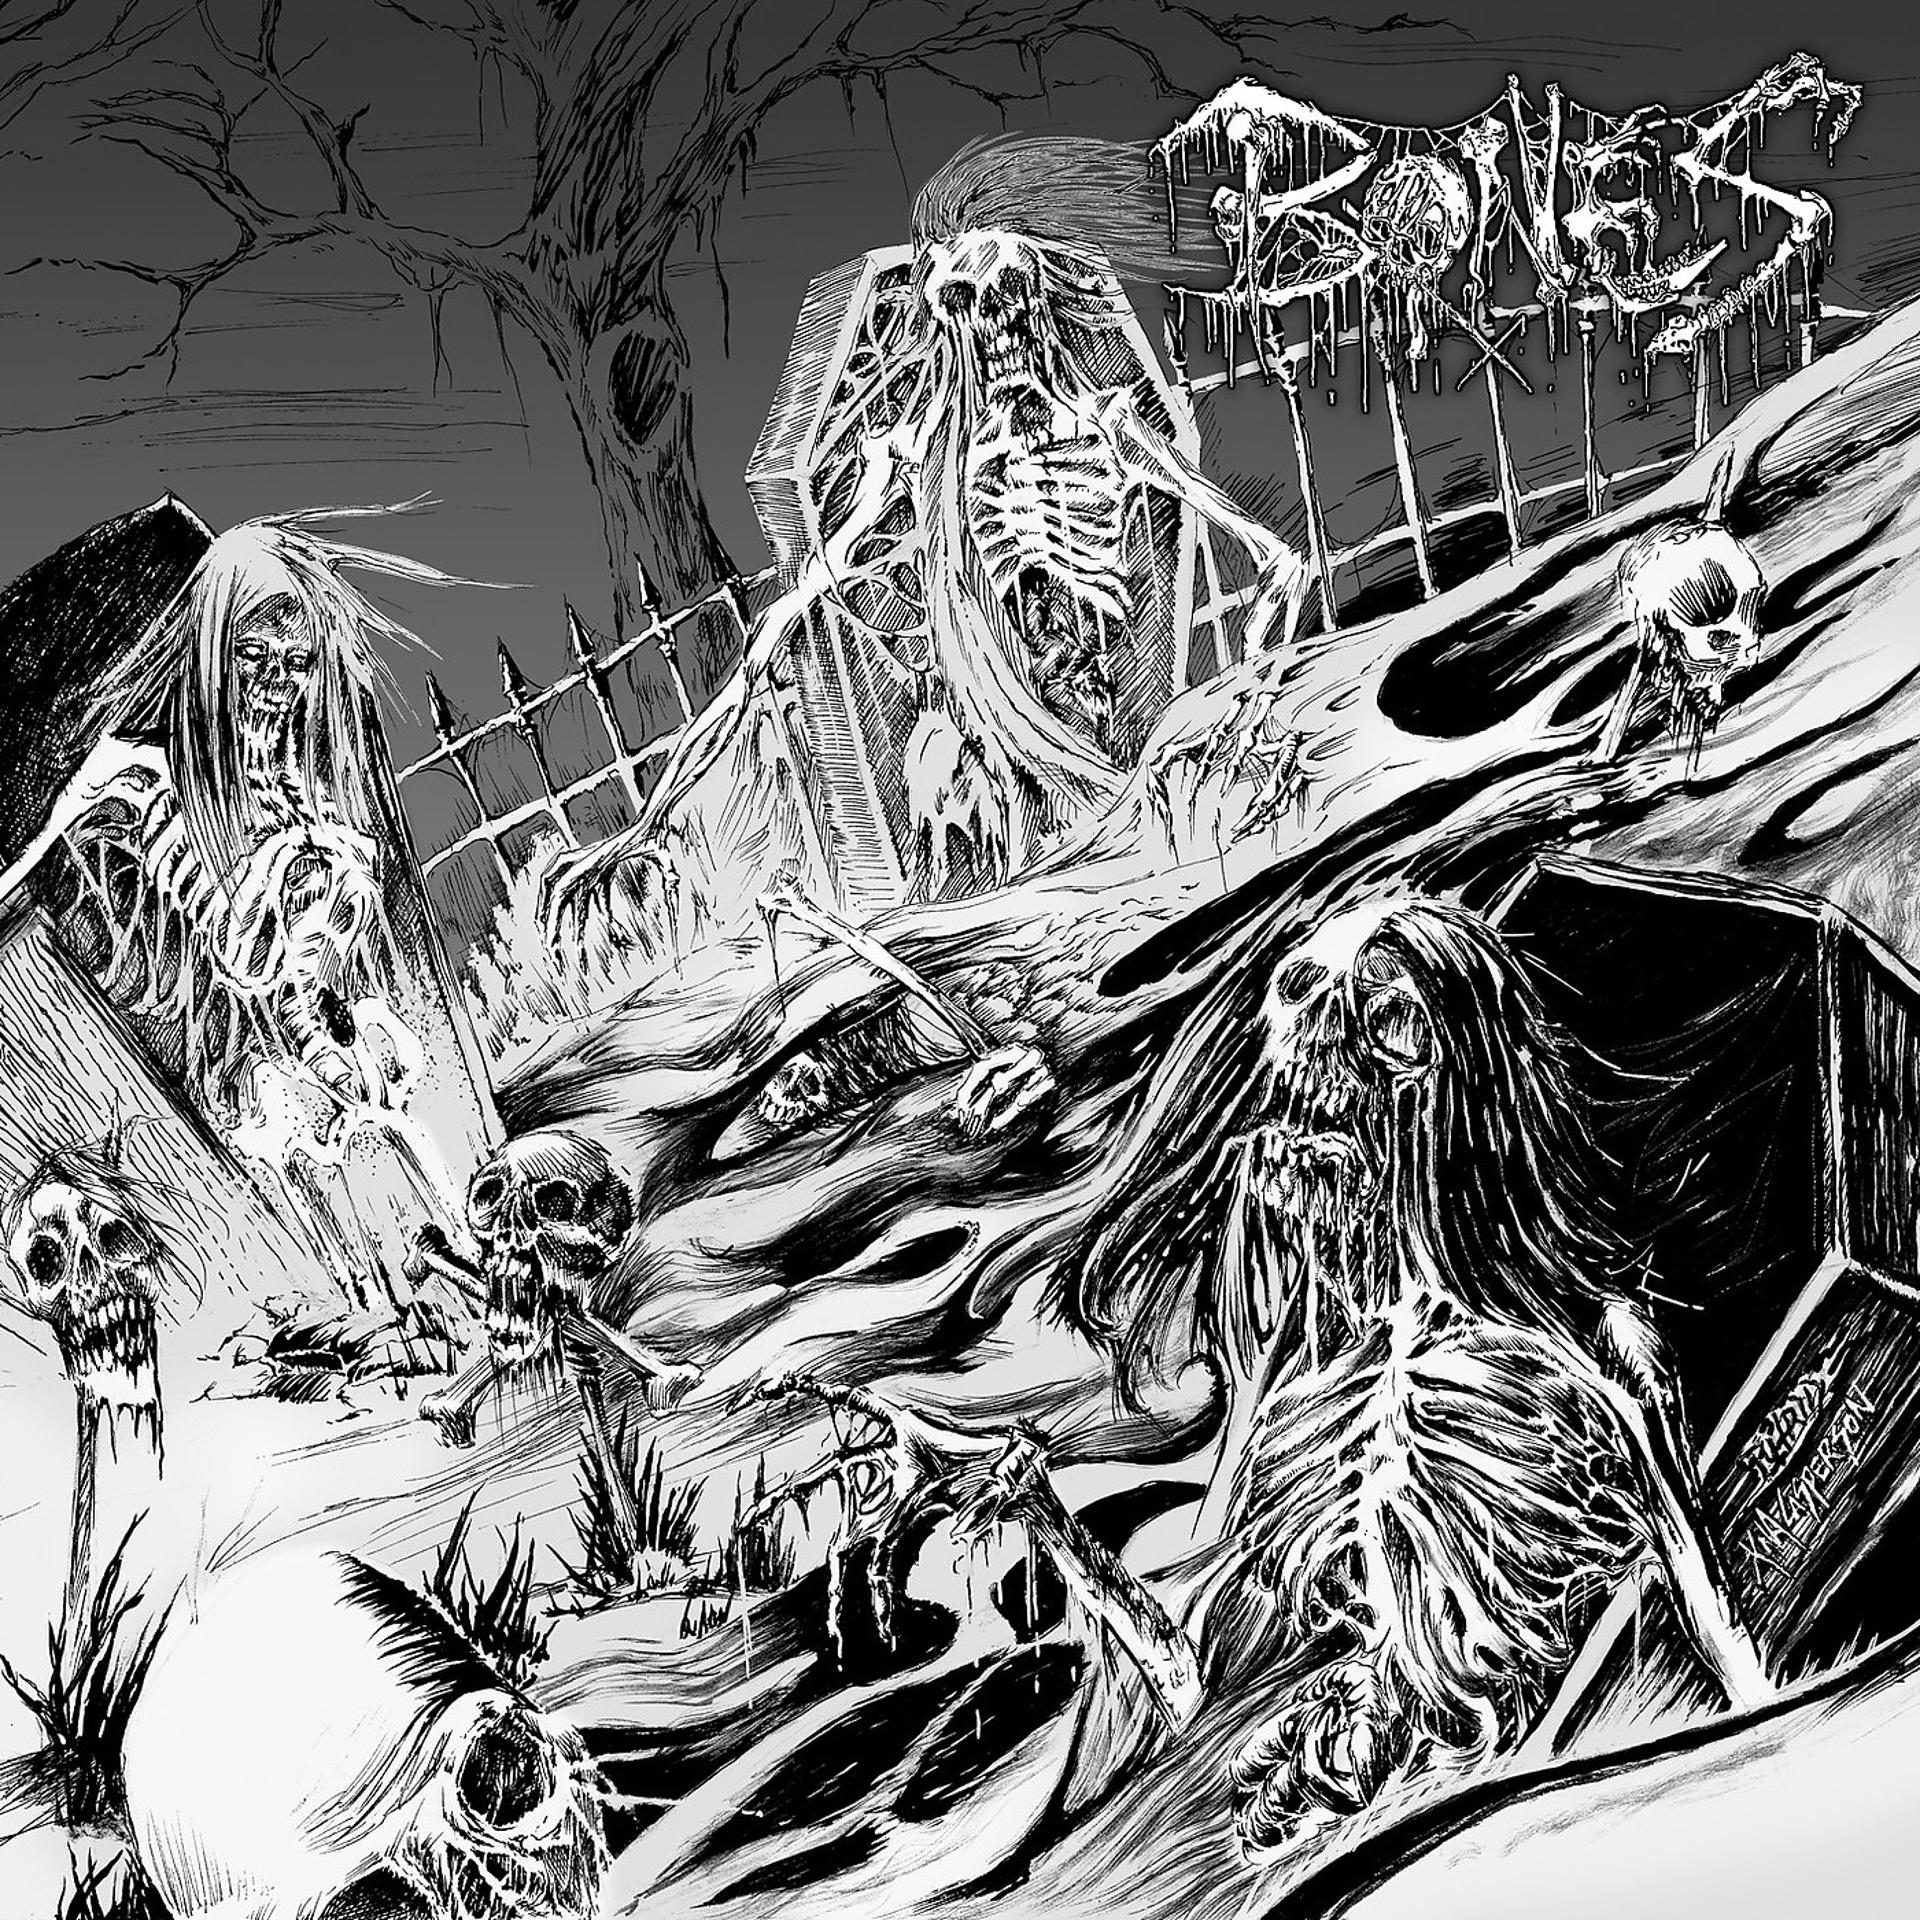 Bones ctrl. Bones (рэпер). Bones обложки альбомов. Bones livingsucks. Bones (рэпер) альбомы.